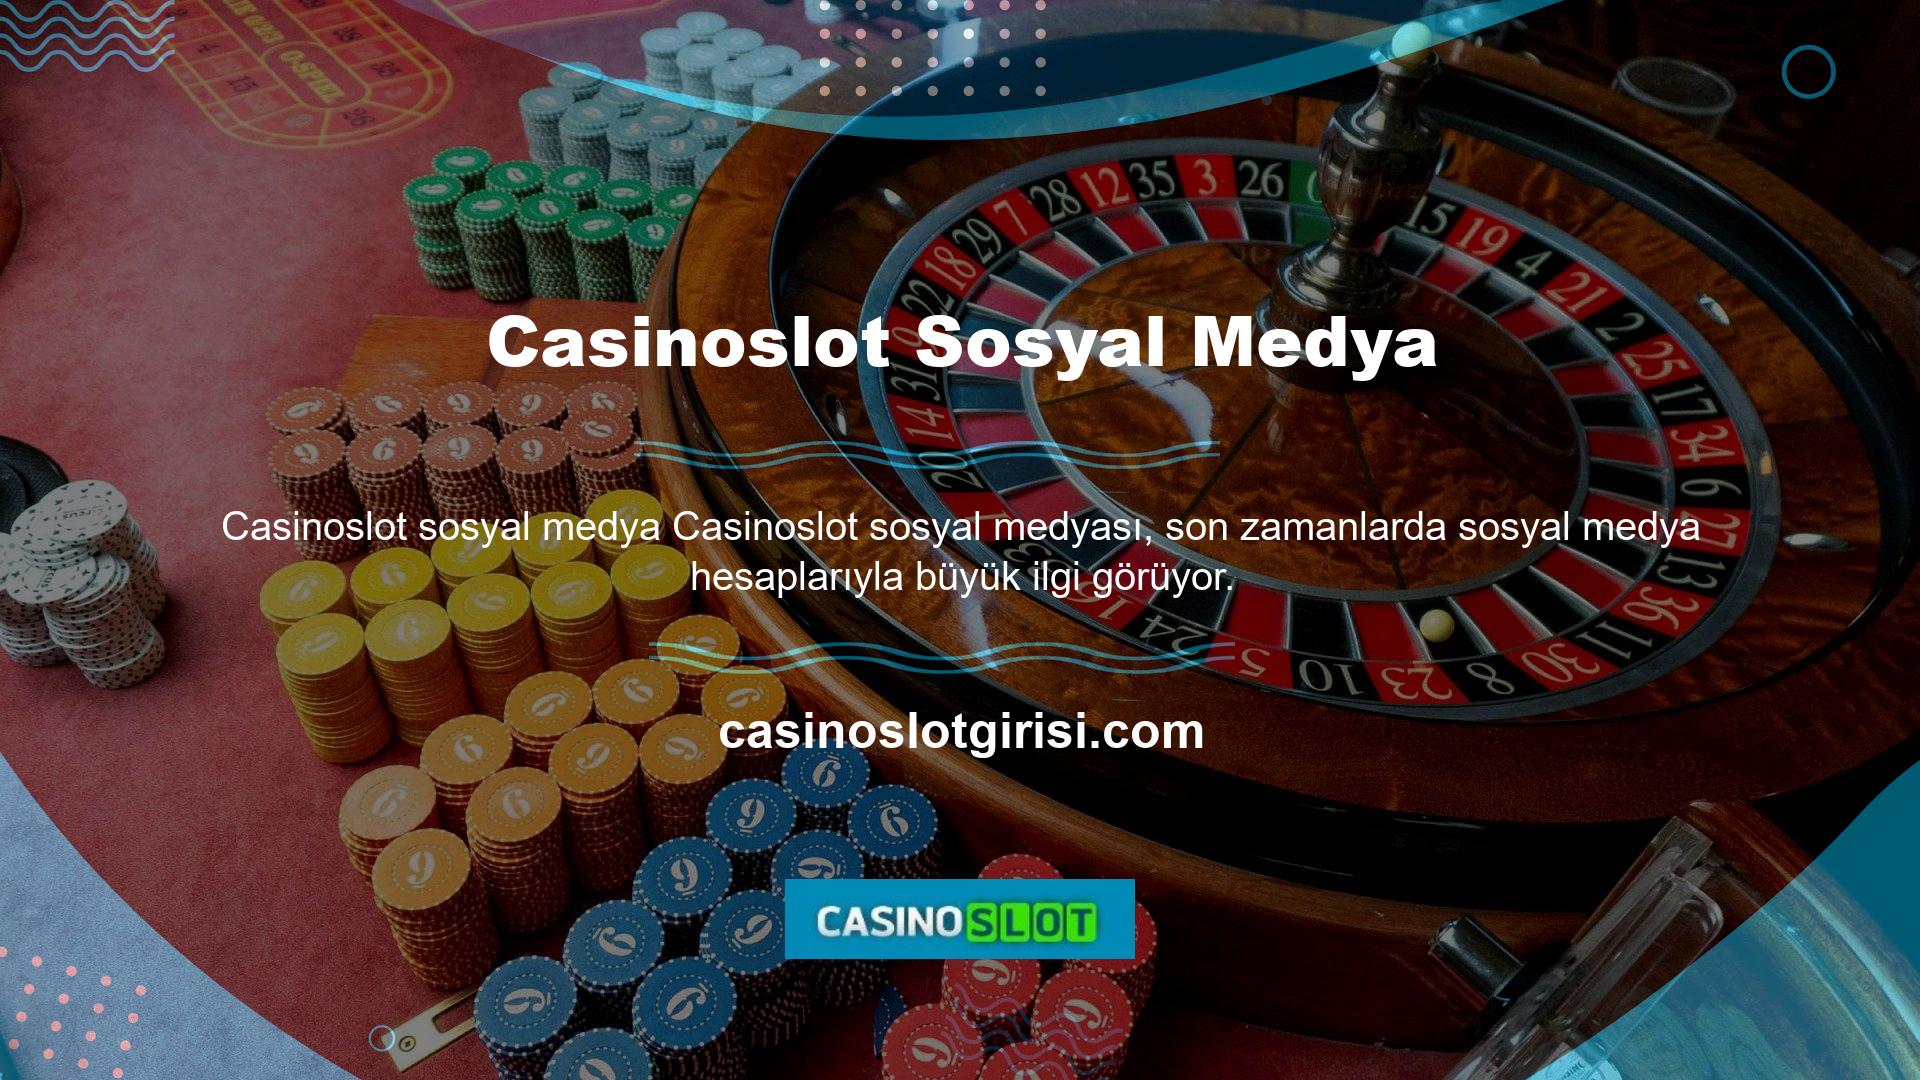 Casinoslot sosyal medyası, casino sitesinin sosyal medya bilgilerini şimdiye kadar gizli tuttu, resmi hesaplarına fazla yer vermedi